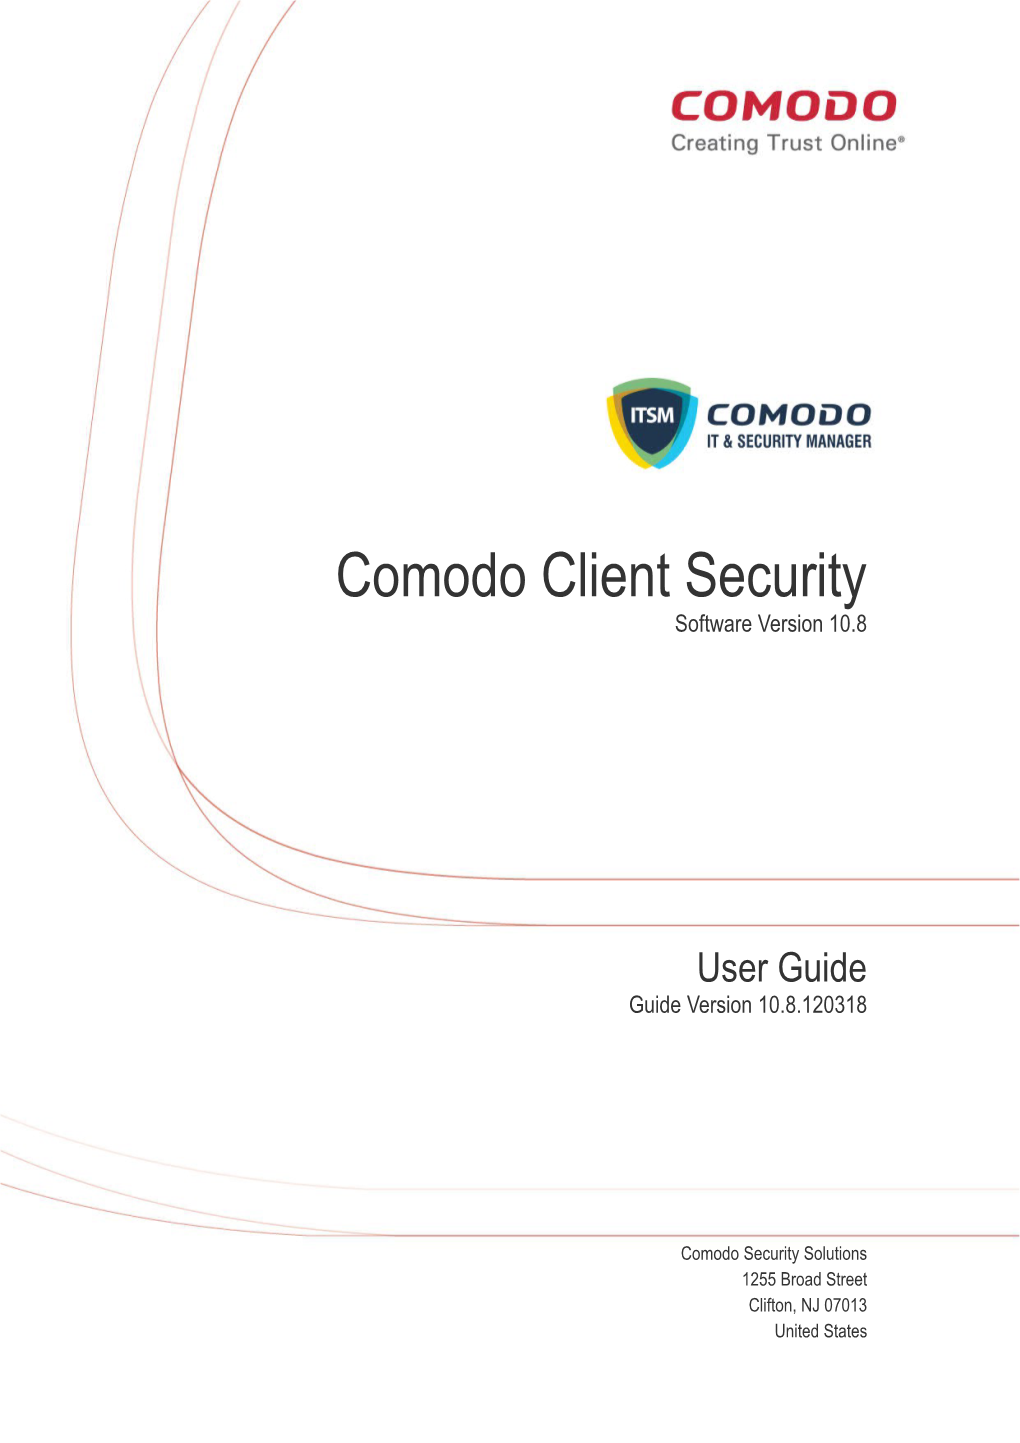 Comodo Client Security User Guide | © 2018 Comodo Security Solutions Inc